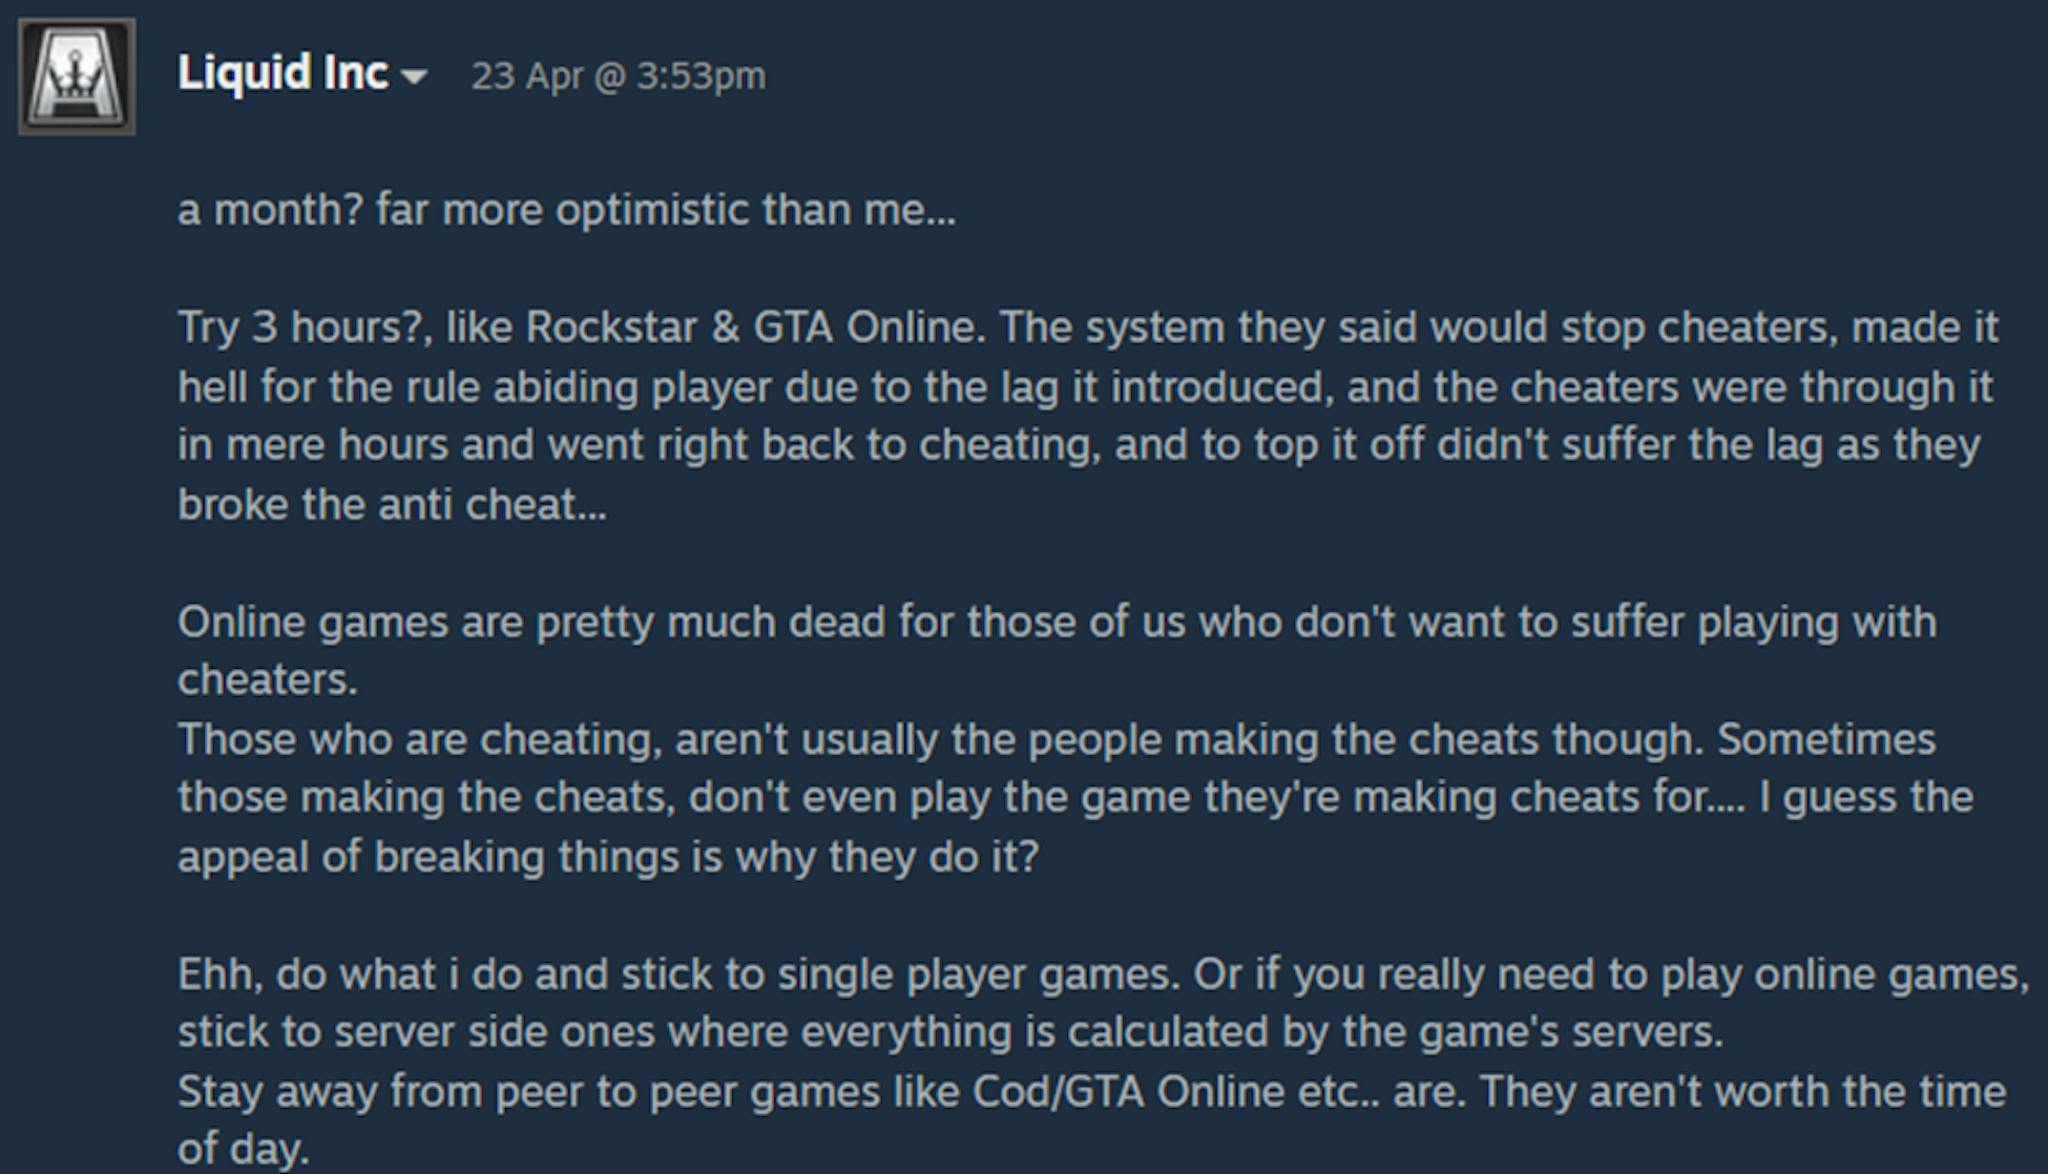 上の画像は Steam ディスカッション ボード上のプレイヤーの失望を示していますが、彼のように絶望的だと考えているプレイヤーはたくさんいます。